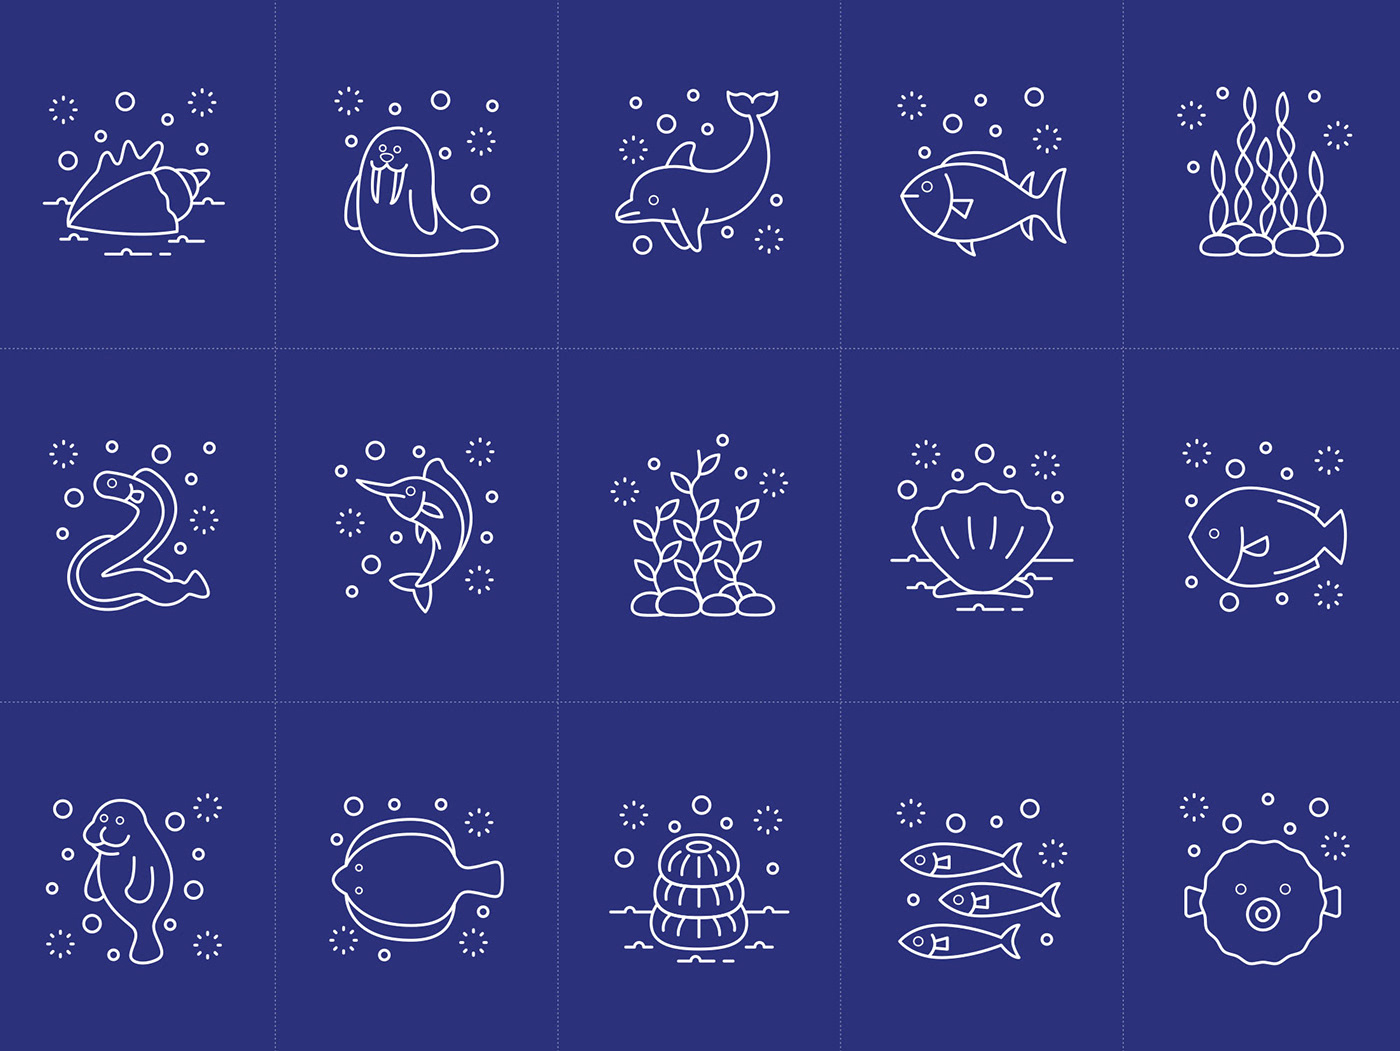 Ocean ocean icons ocean vectors icons Icons design download vector icons vectors icons pack icons set